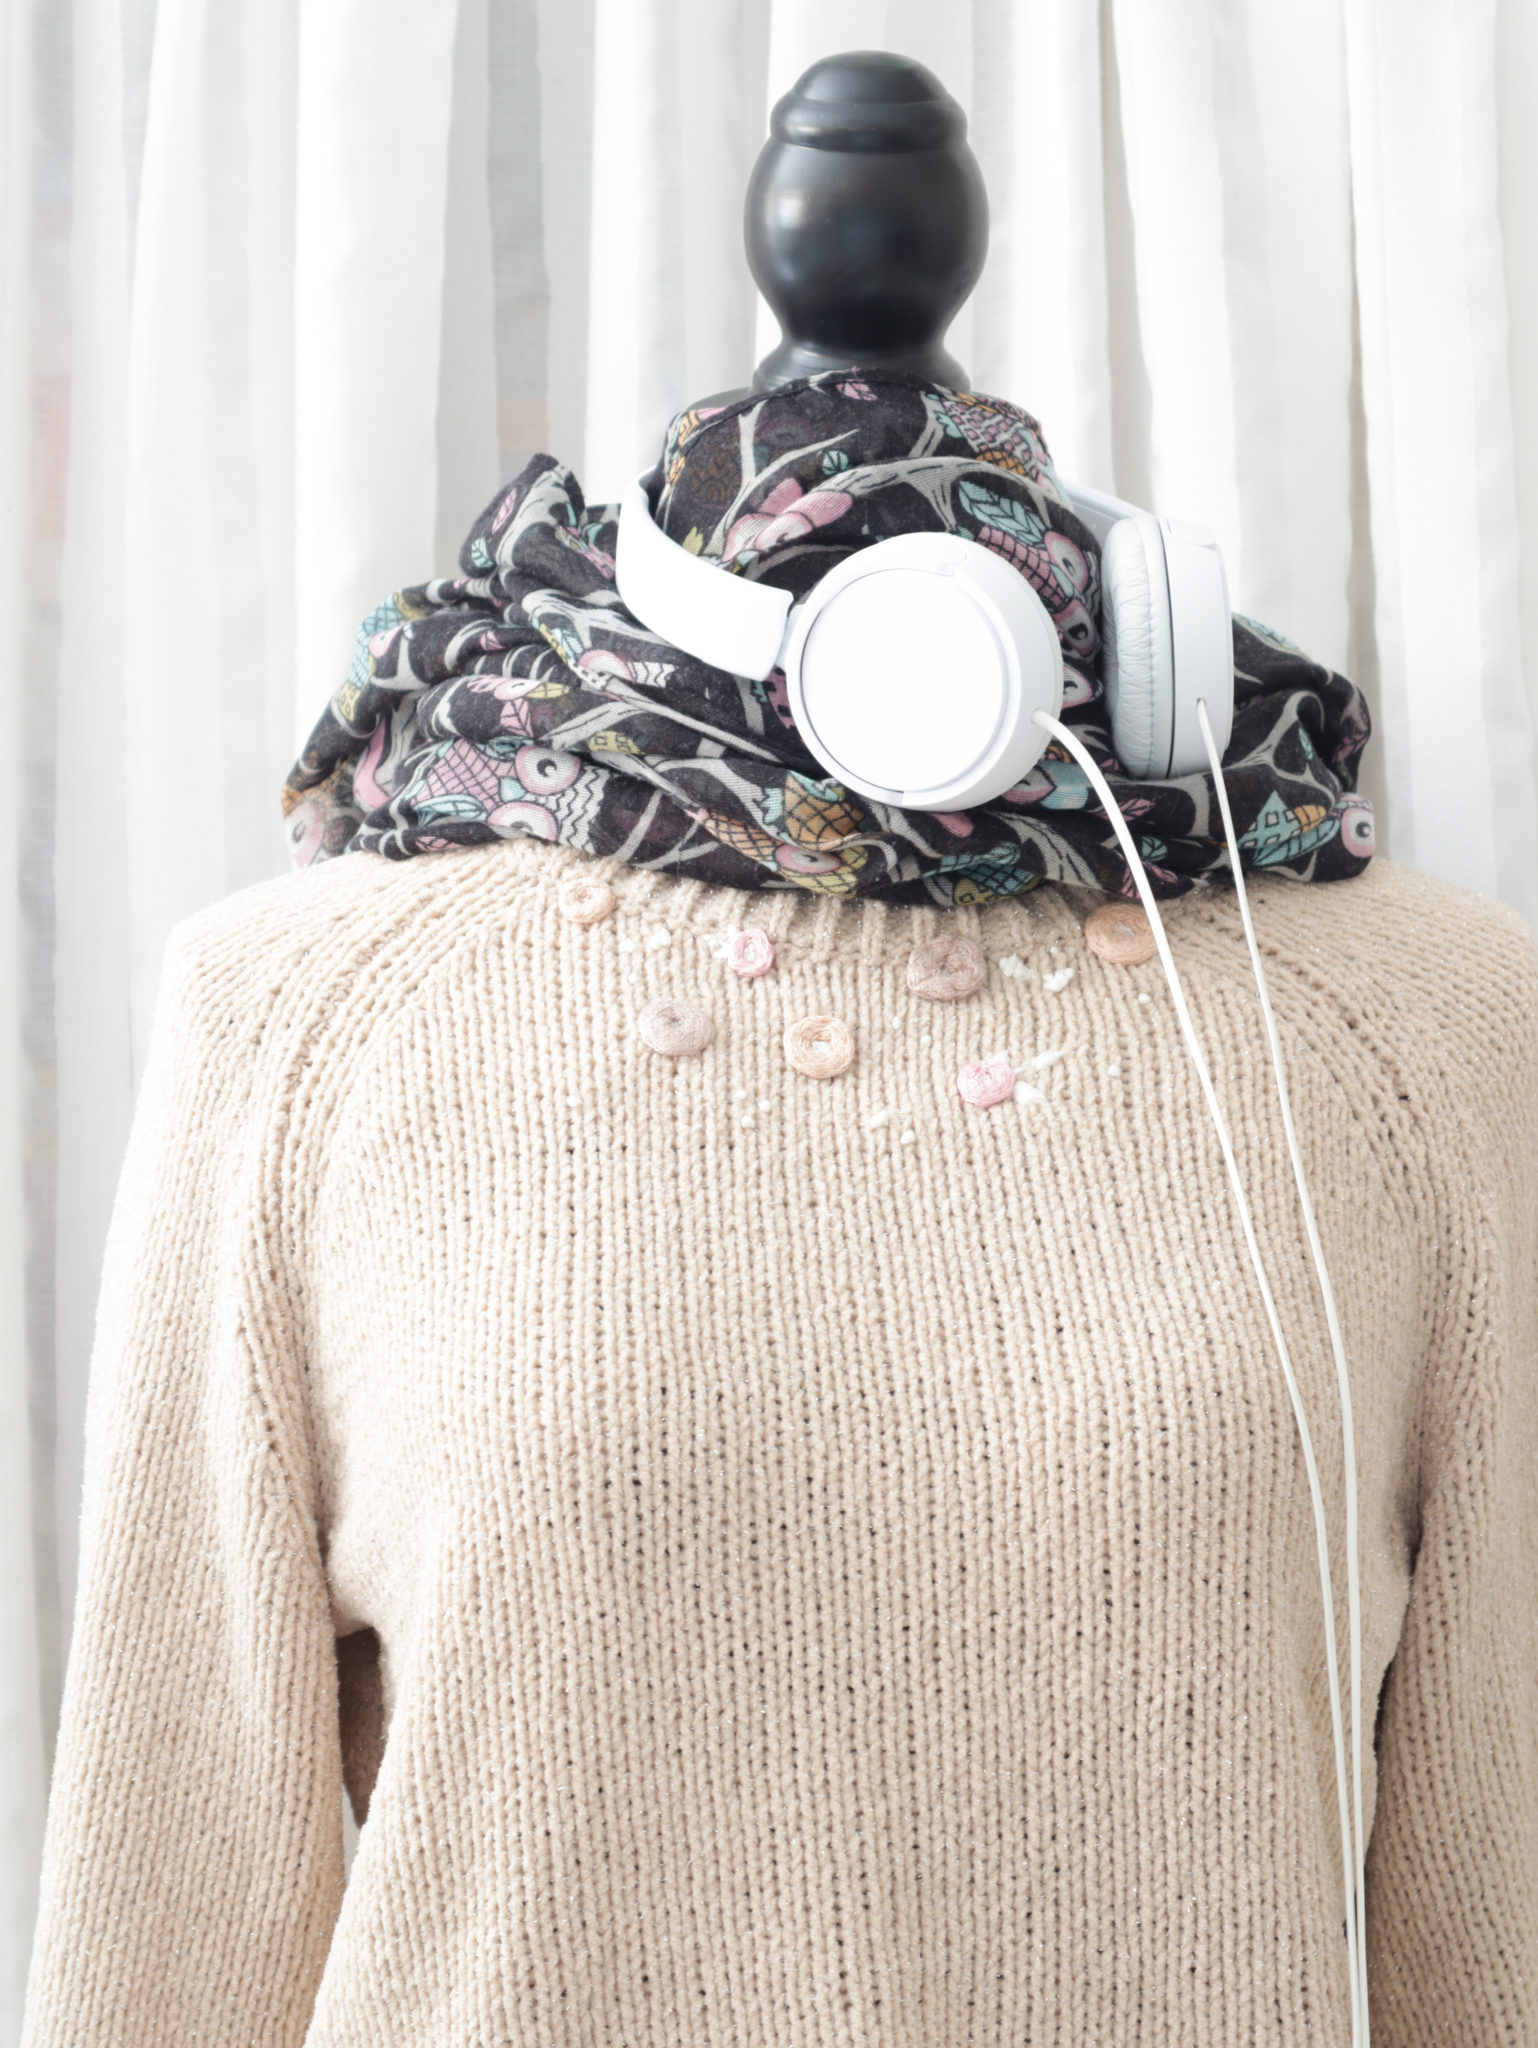 Bestickter Pullover auf einer Anziehpuppe mit Schal und Kopfhörern.